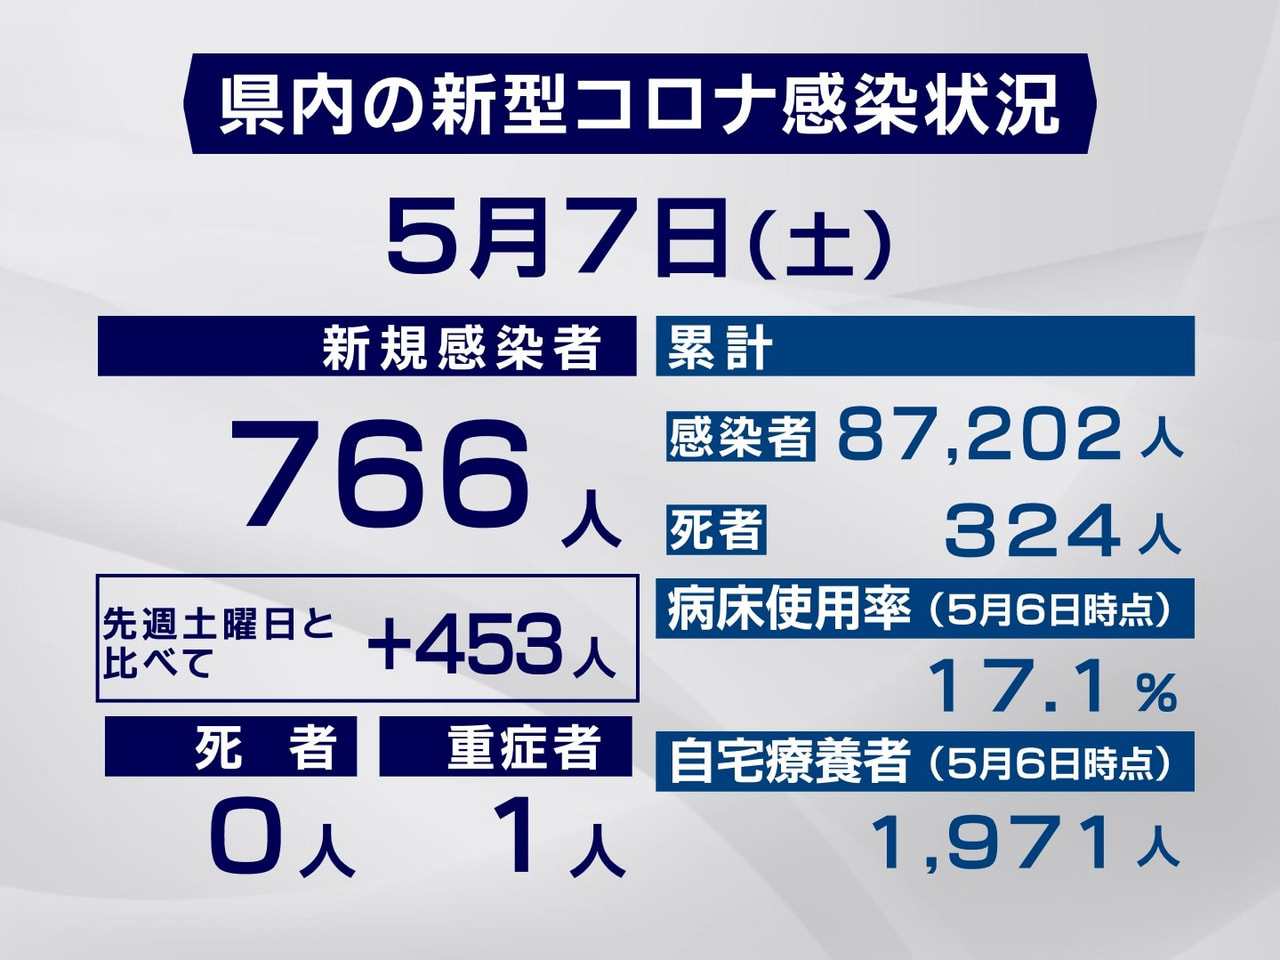 岐阜県は７日、新型コロナウイルスの新規感染者が７６６人確認されたと発表しました。...